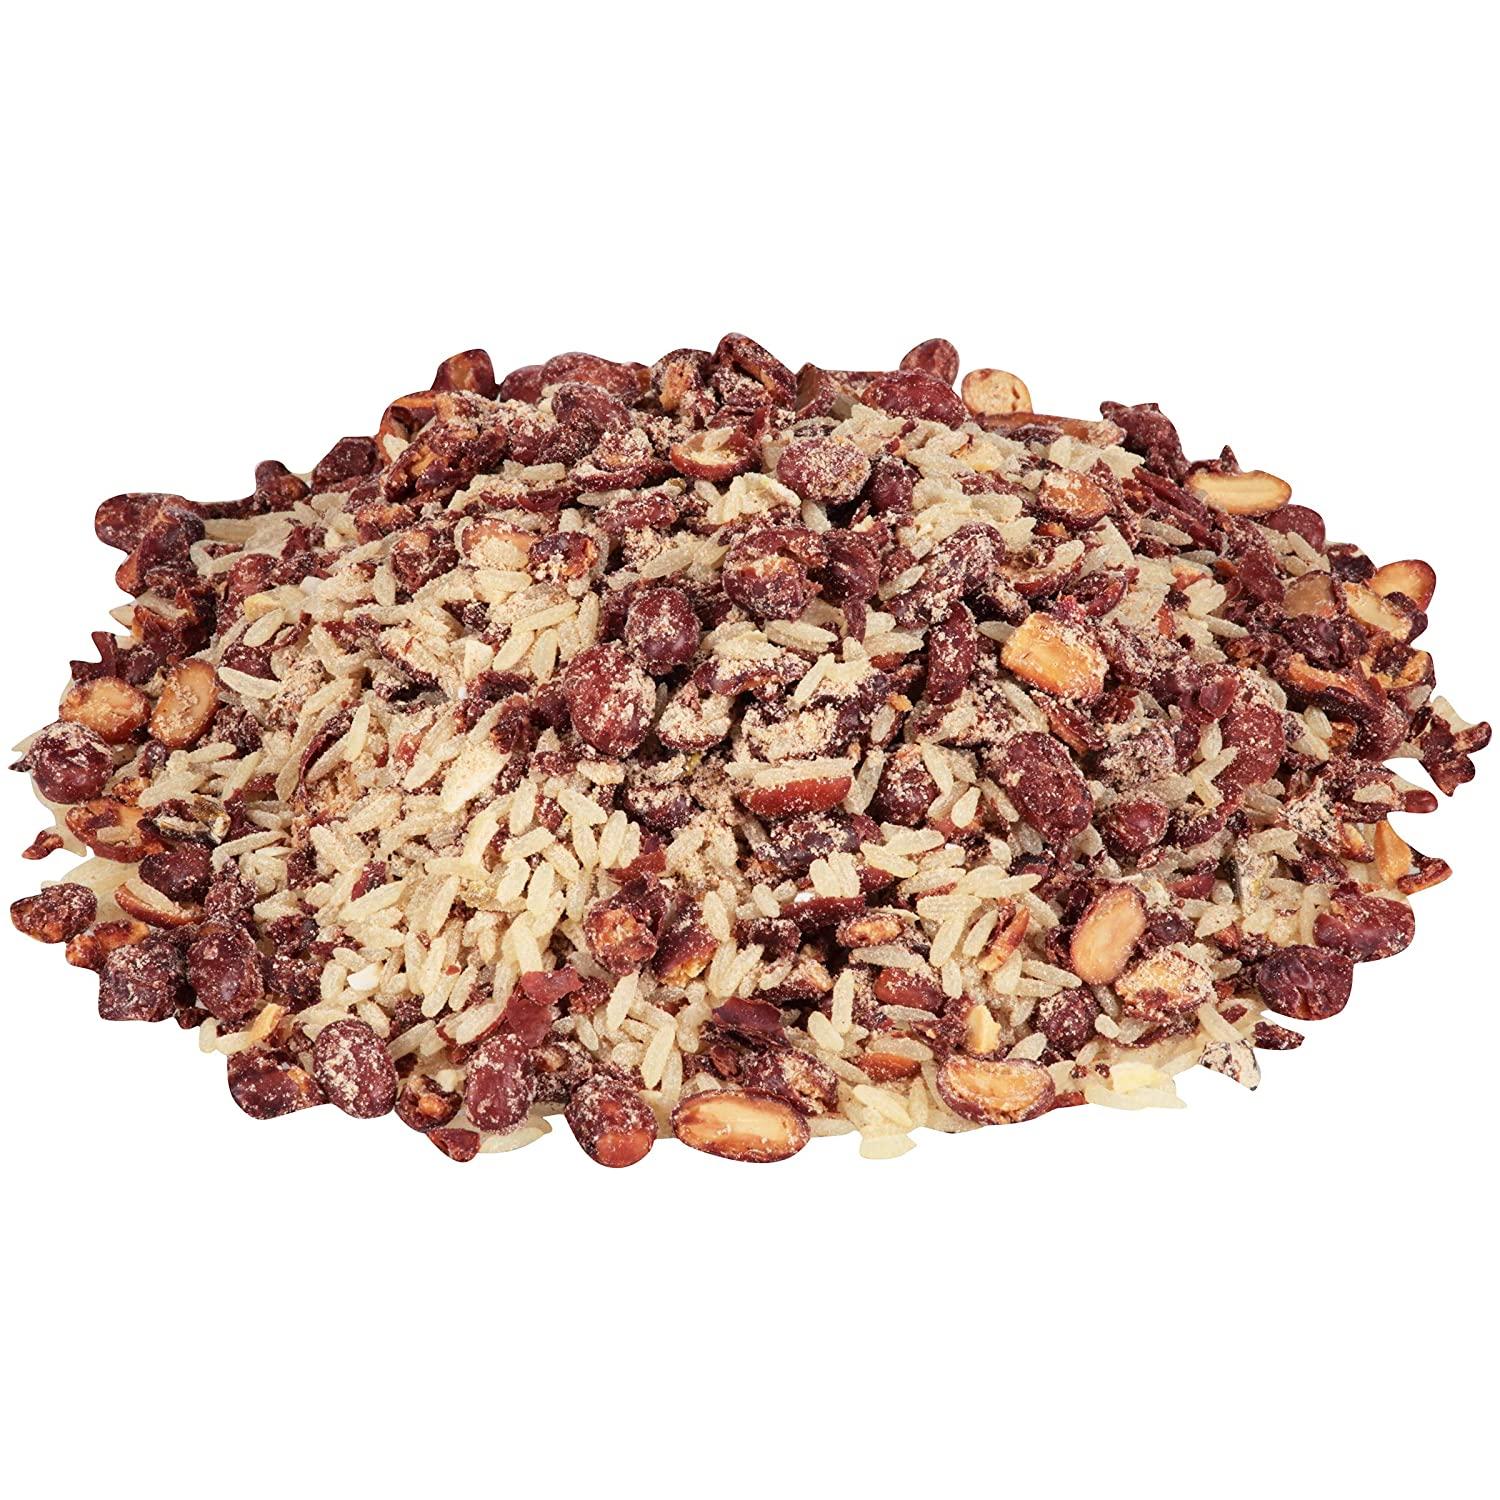 Zatarain's Red Beans and Rice Mix